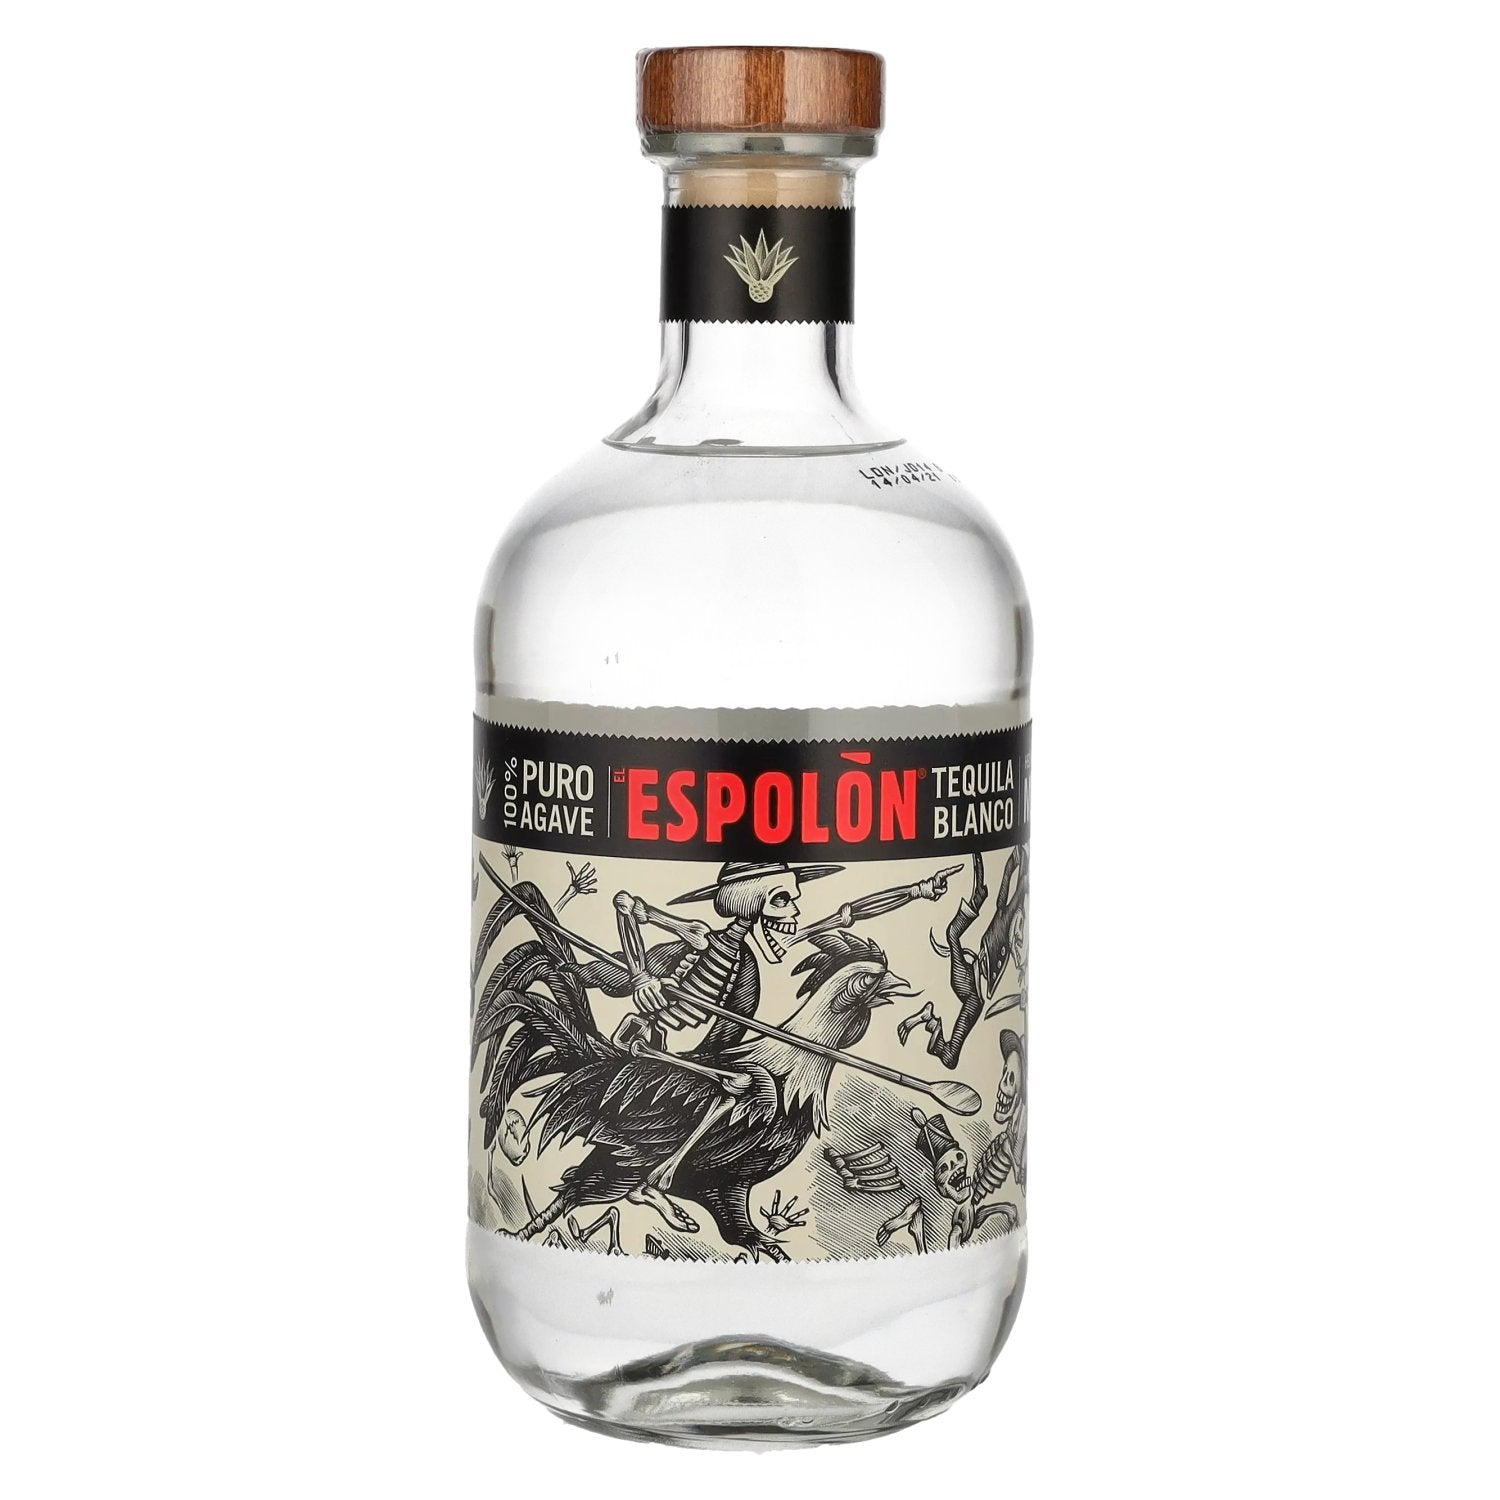 Espolon Tequila Blanco 100% puro Agave 40% Vol. 0,7l